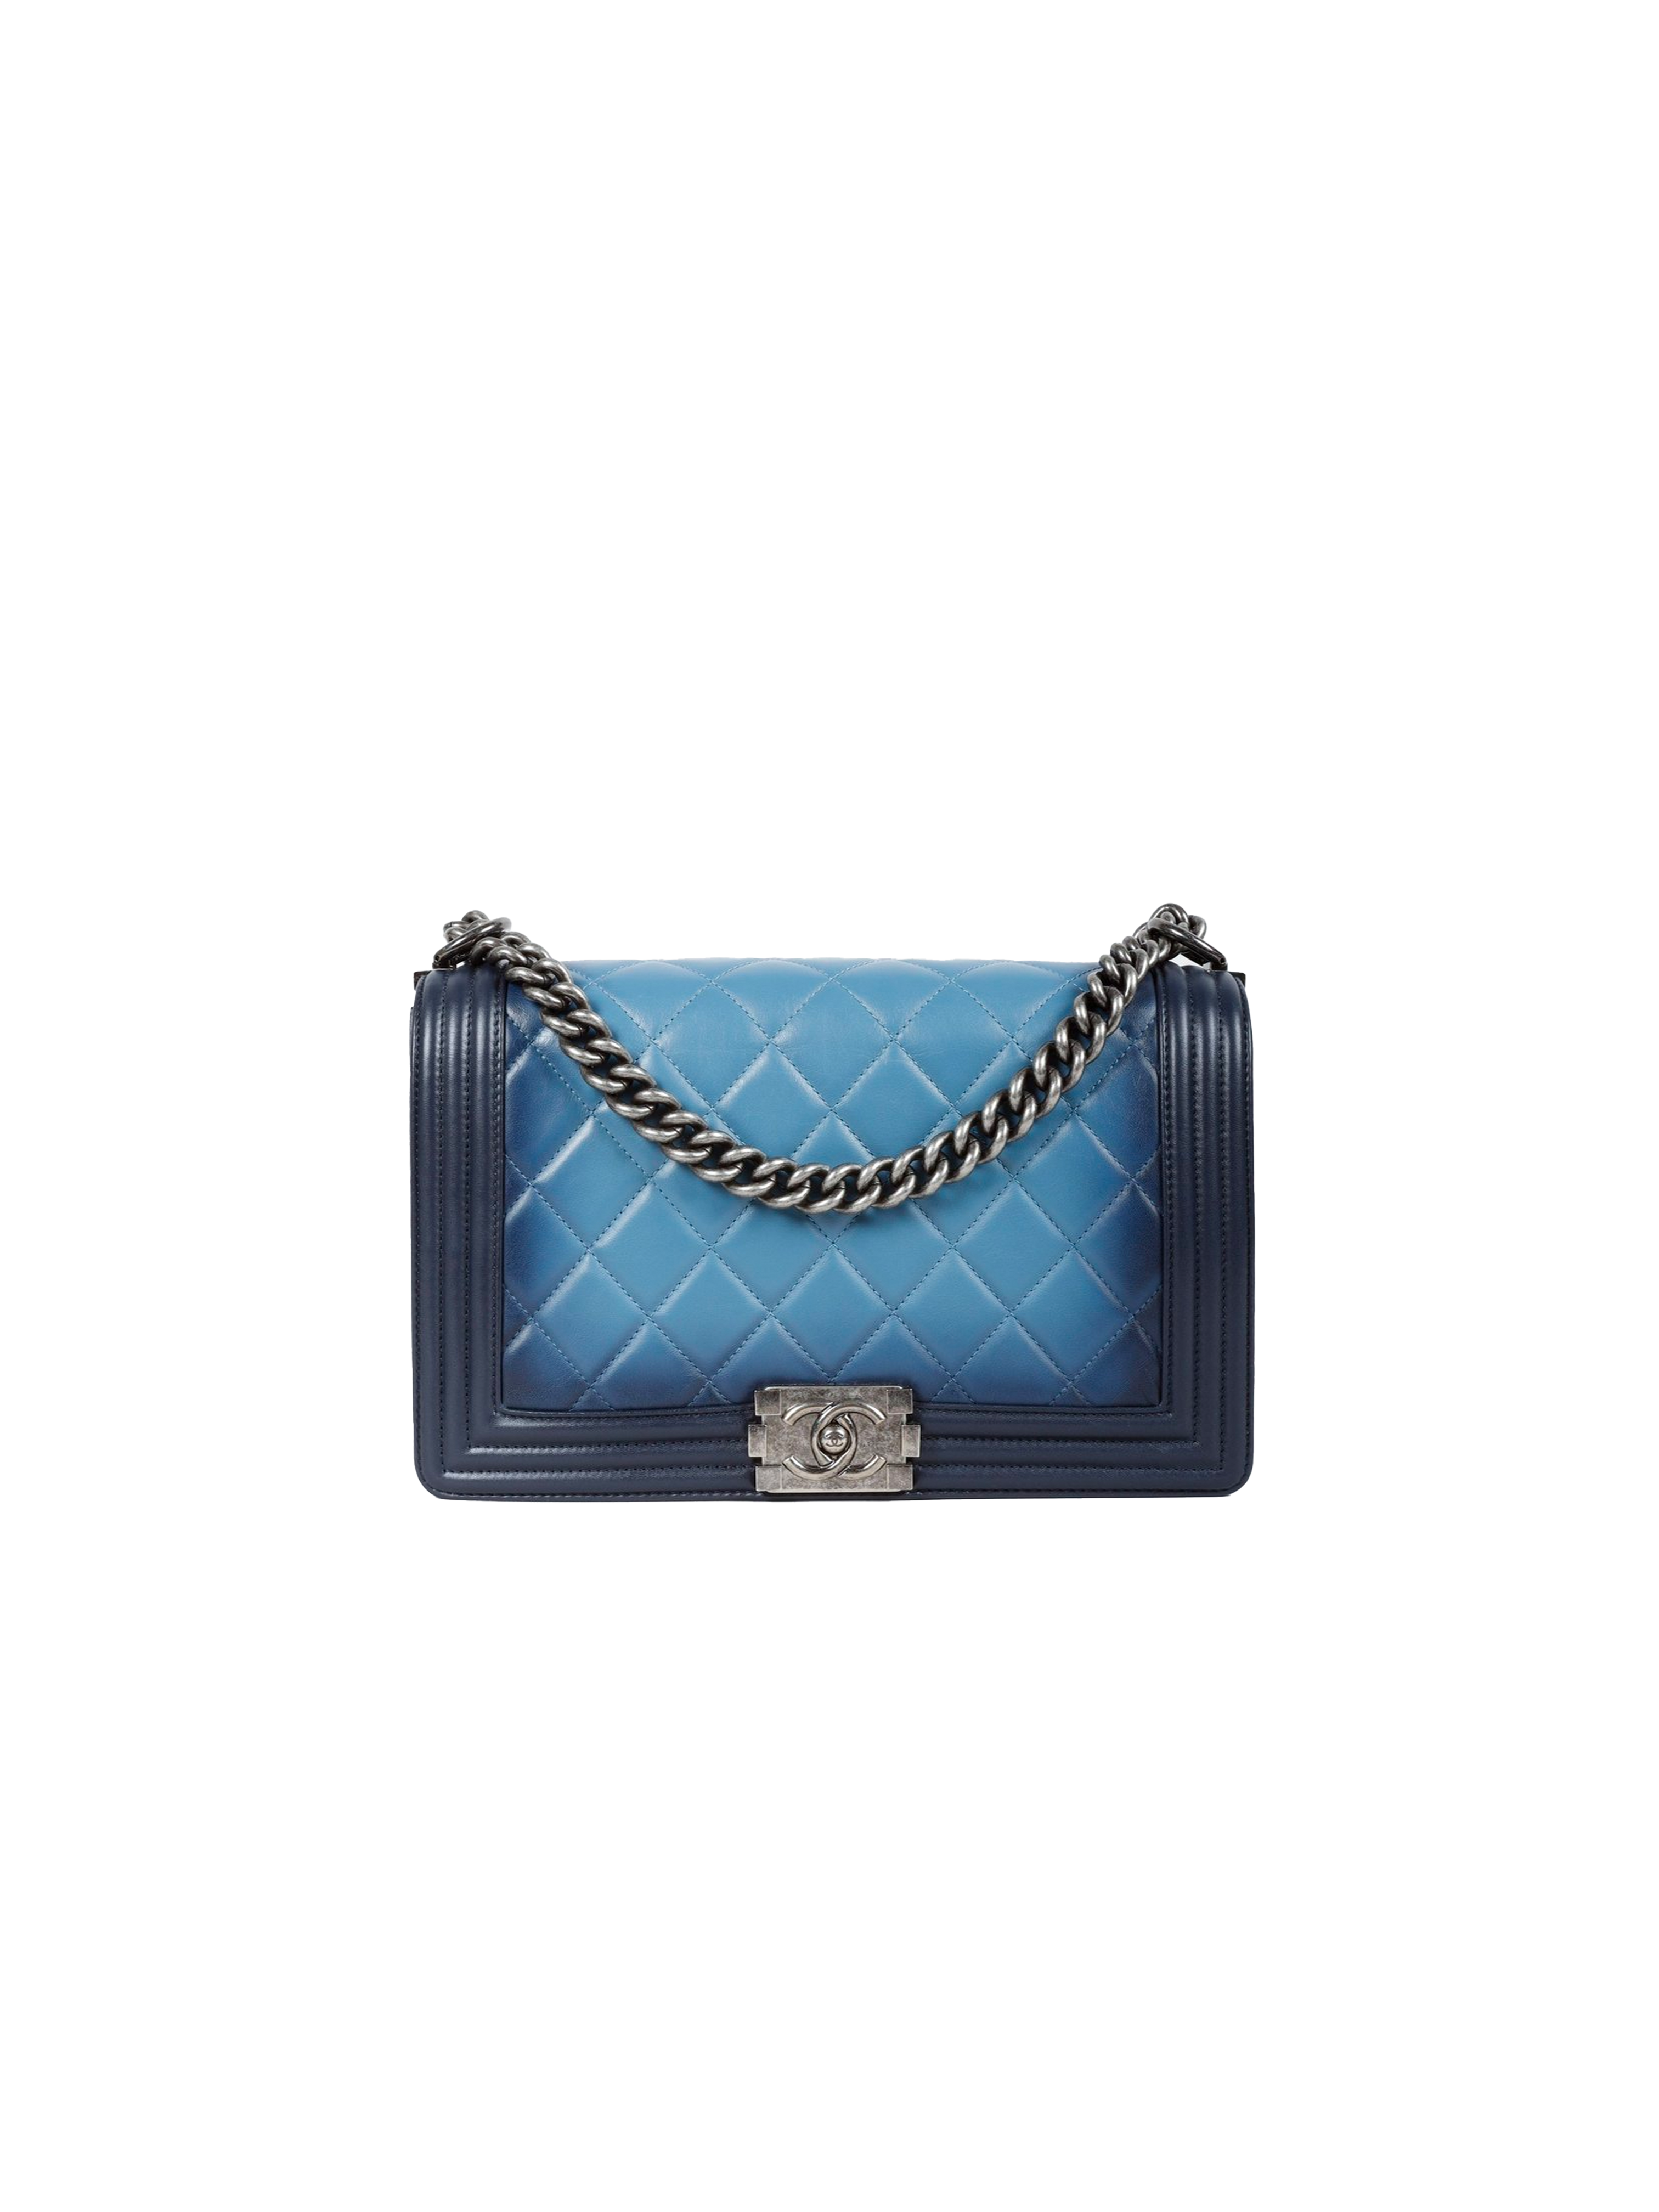 Chanel Pre-Spring 2014 Ombre Blue Boy Bag · INTO